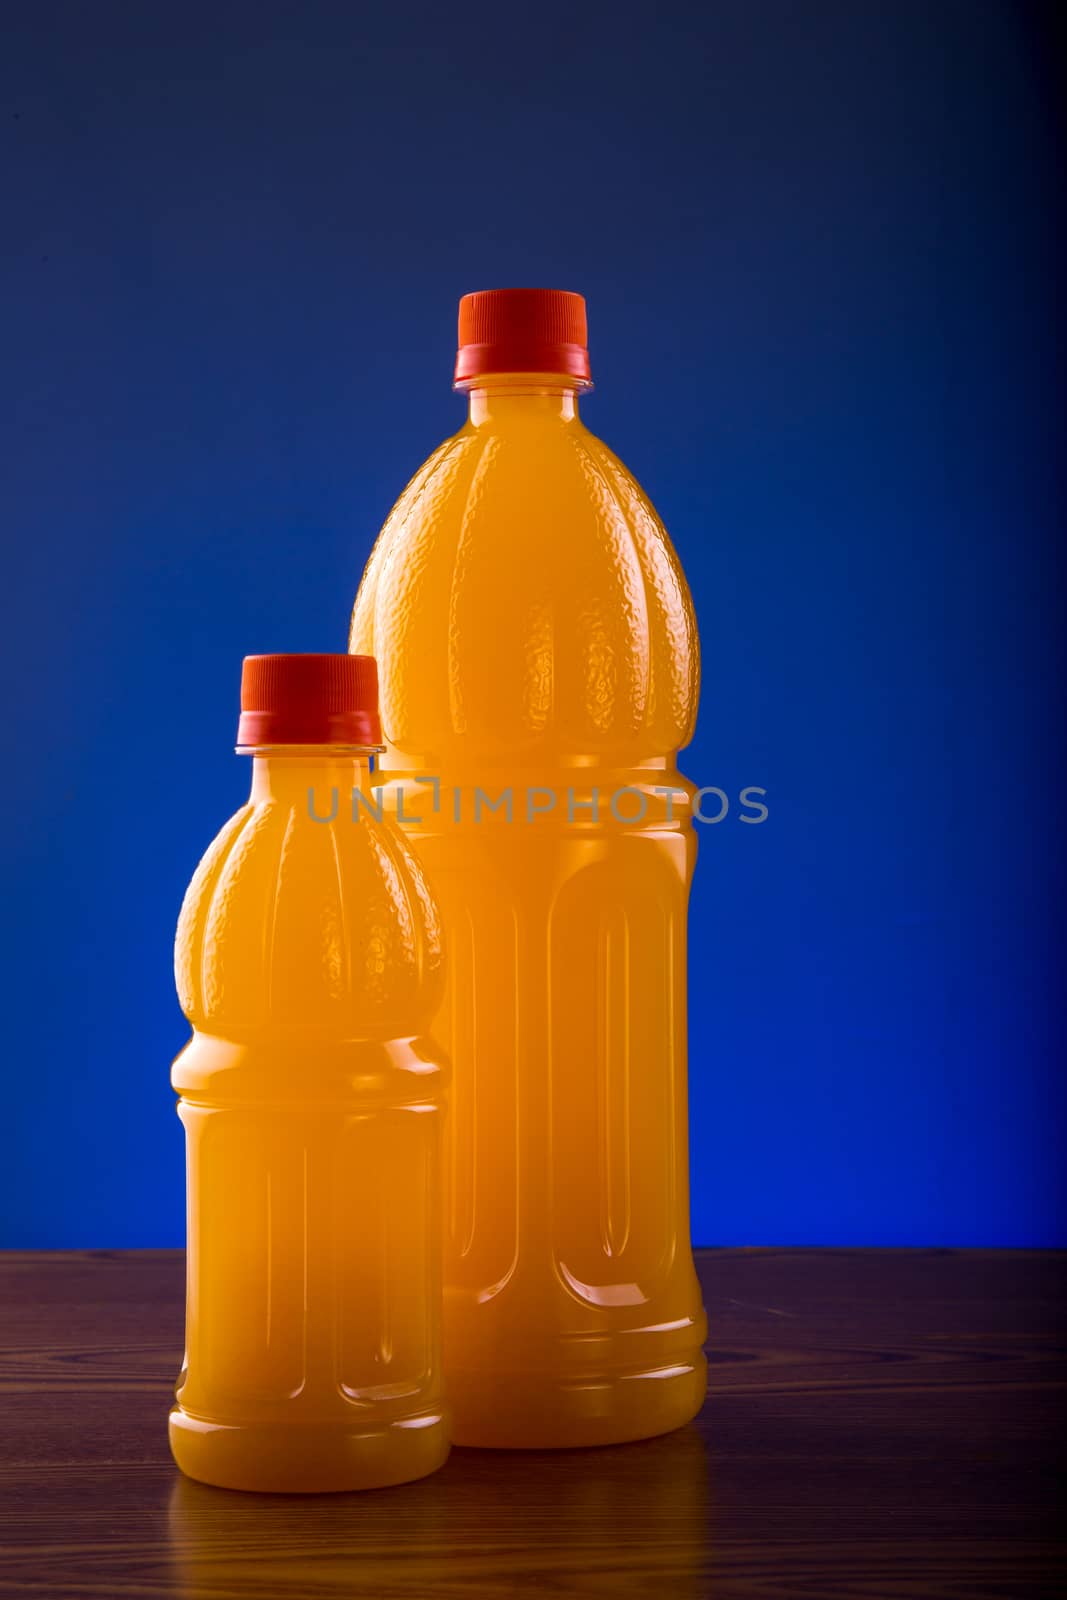 Bottle of an orange juice